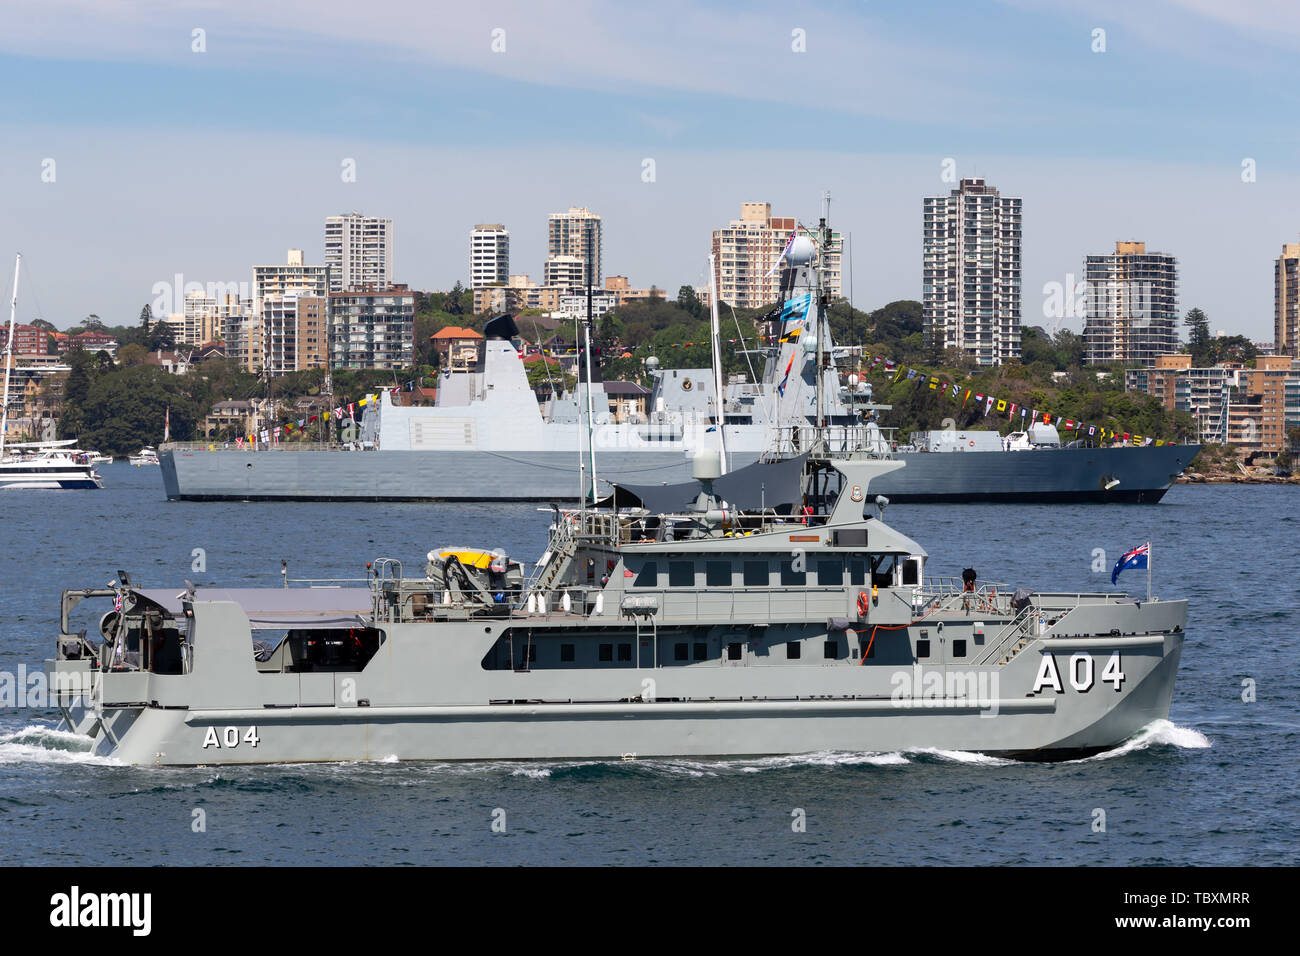 HMAS Benalla (A 04) Paluma-class survey motor launch vessel of the Royal Australian Navy on Sydney Harbor. Stock Photo